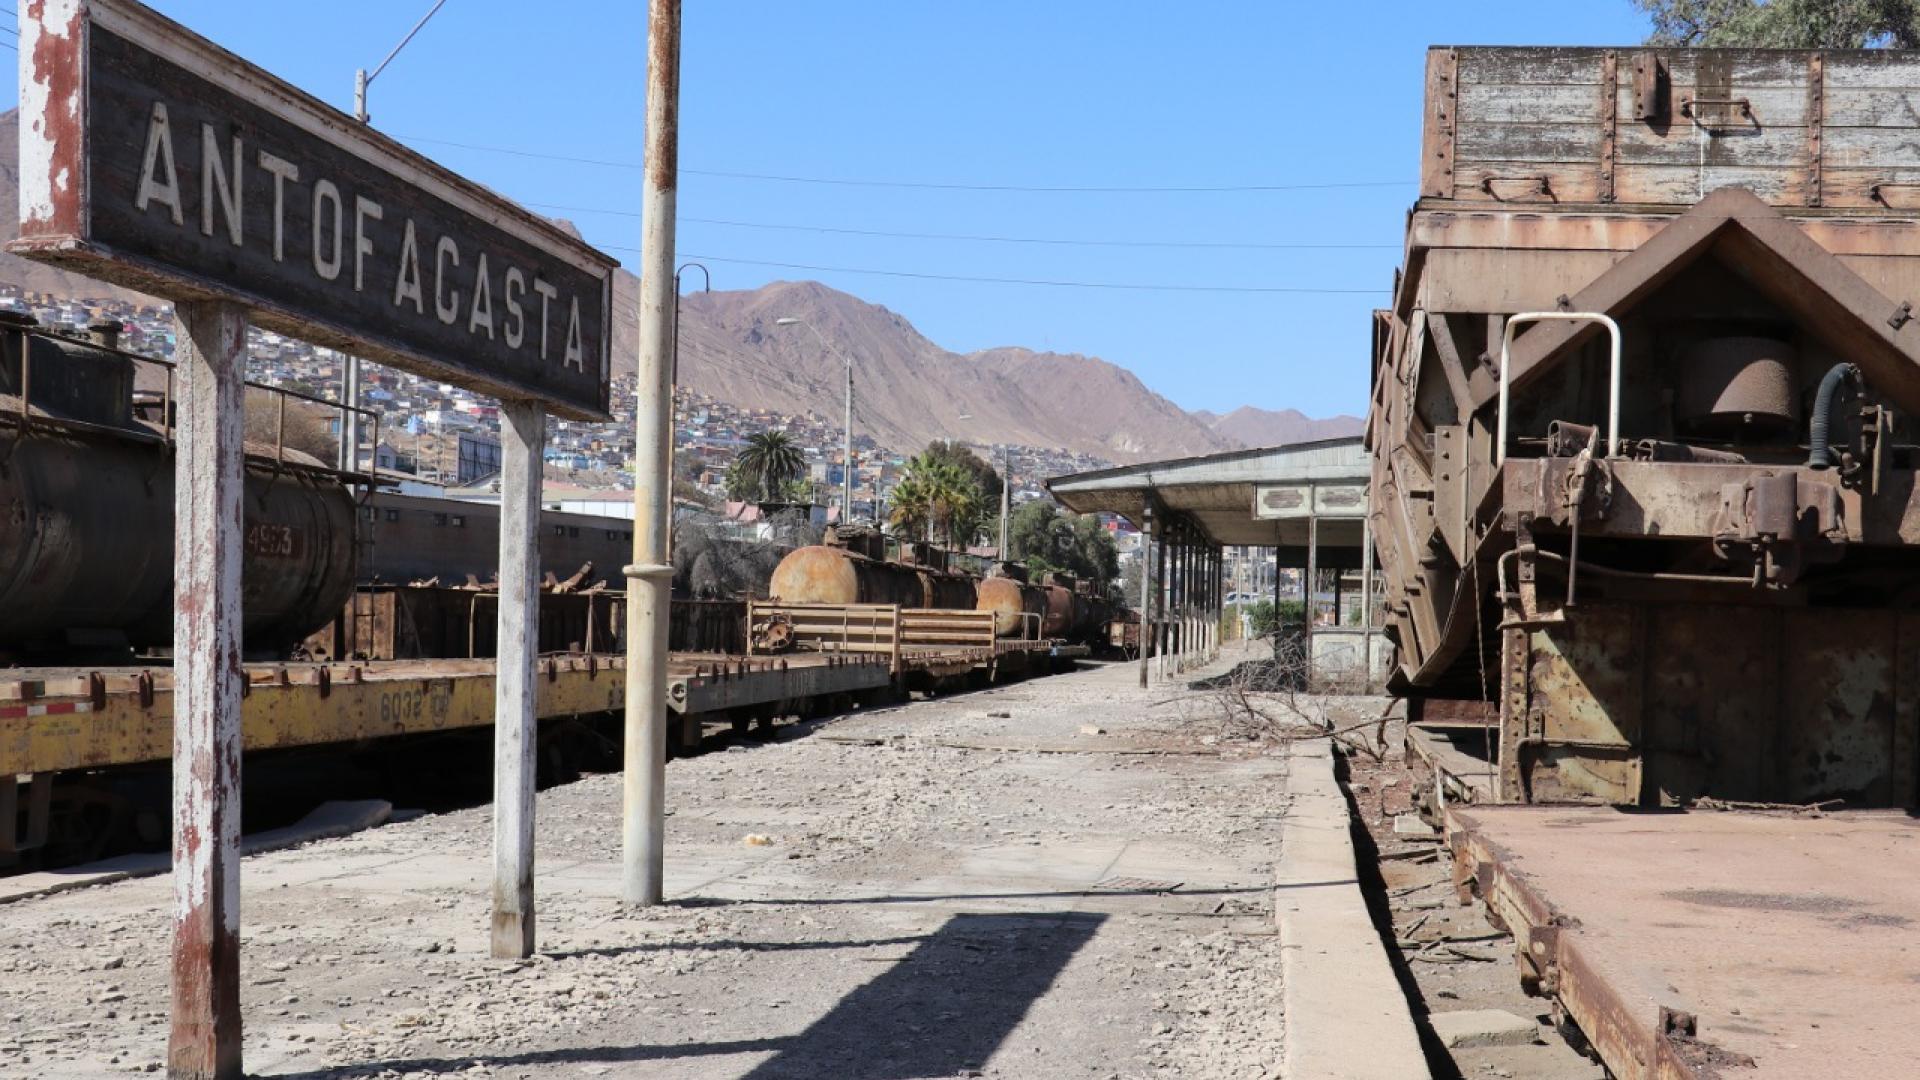 Estación de trenes de Antofagasta